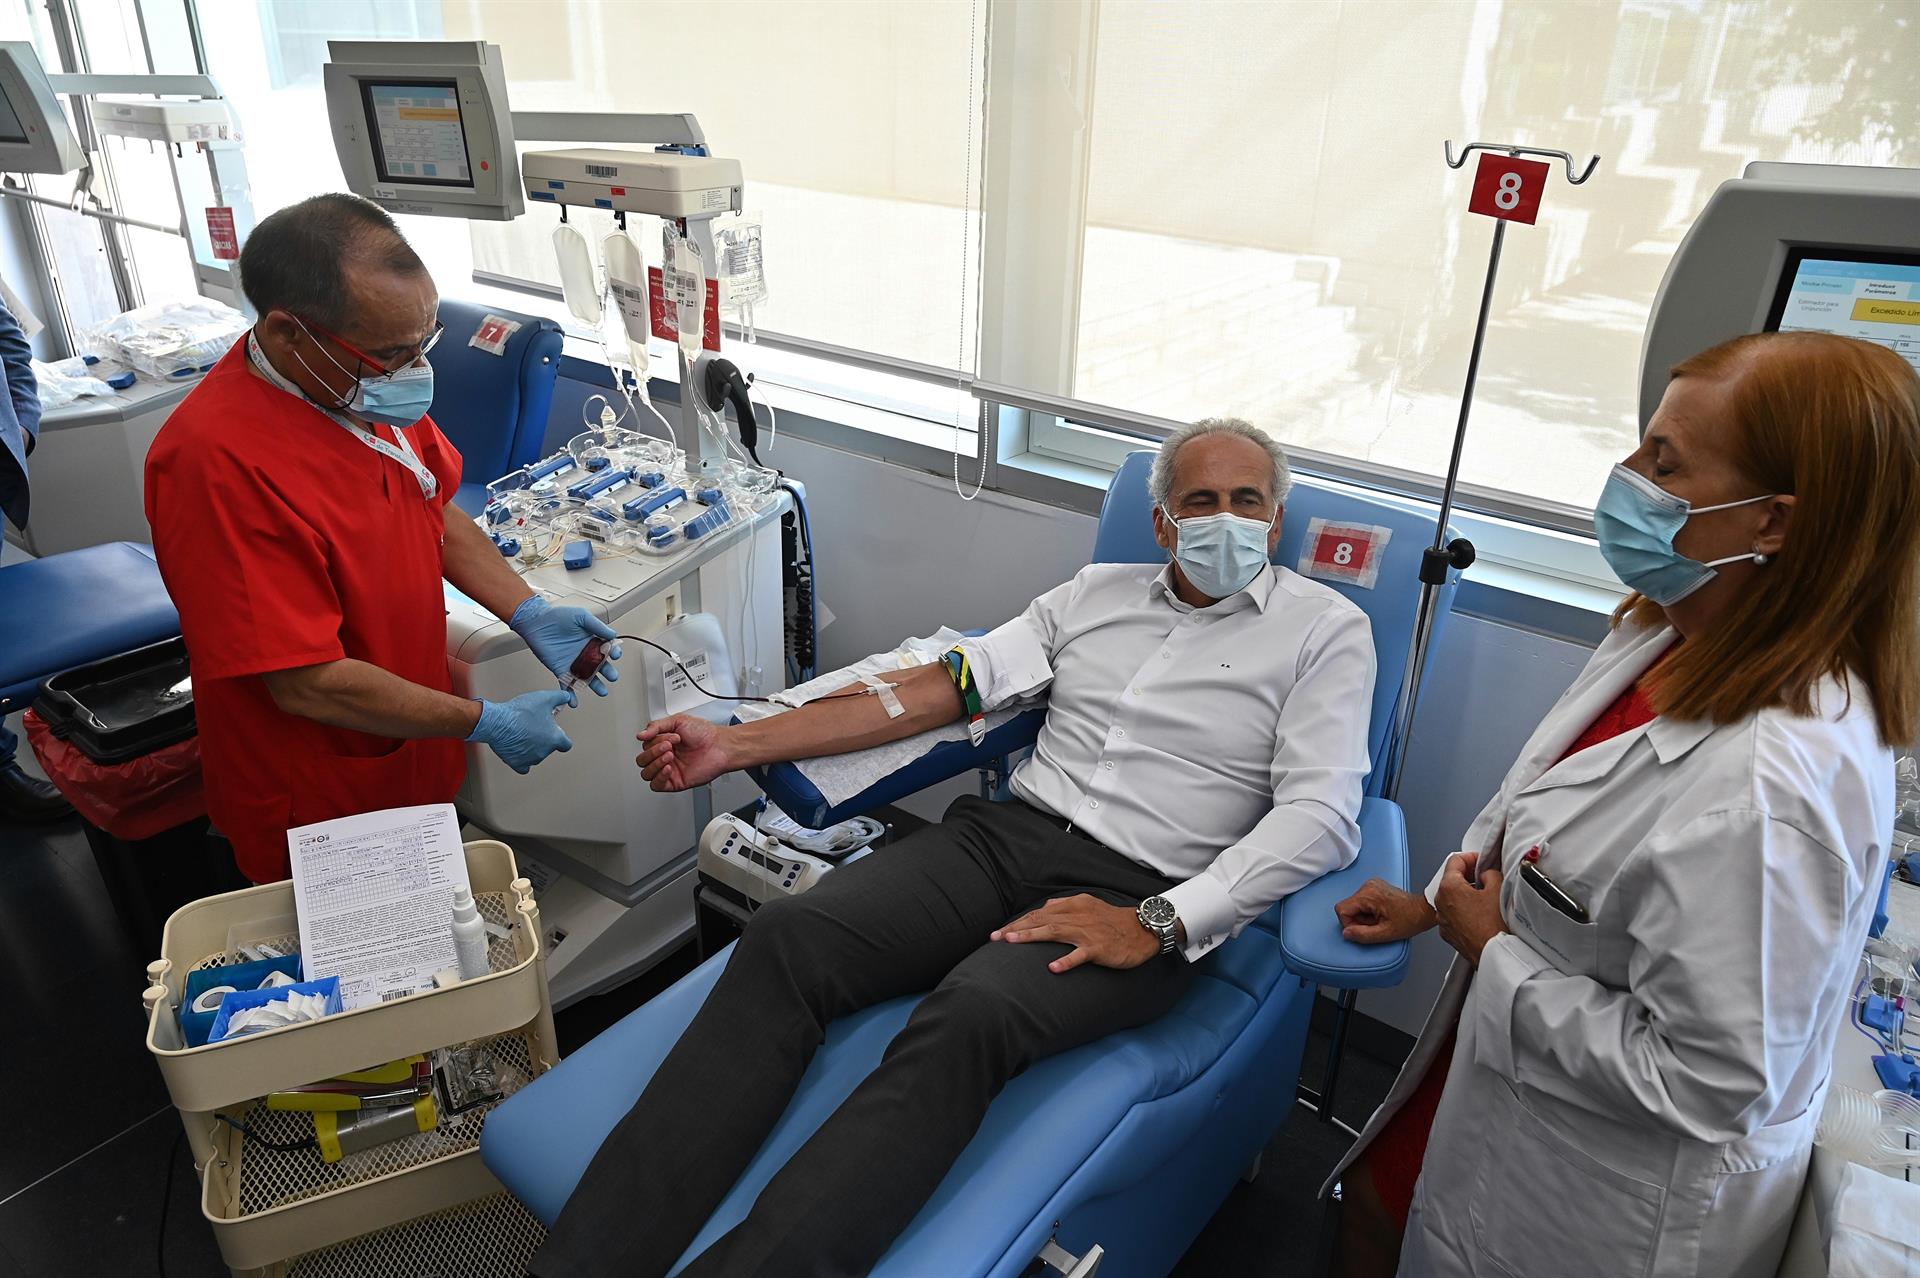 El consejero de Sanidad de la Comunidad de Madrid, Enrique Ruiz Escudero, dona sangre en el Centro de Transfusión regional, para hacer un llamamiento con el fin de incrementar las reservas en el último tramo del verano. EFE/ Fernando Villar